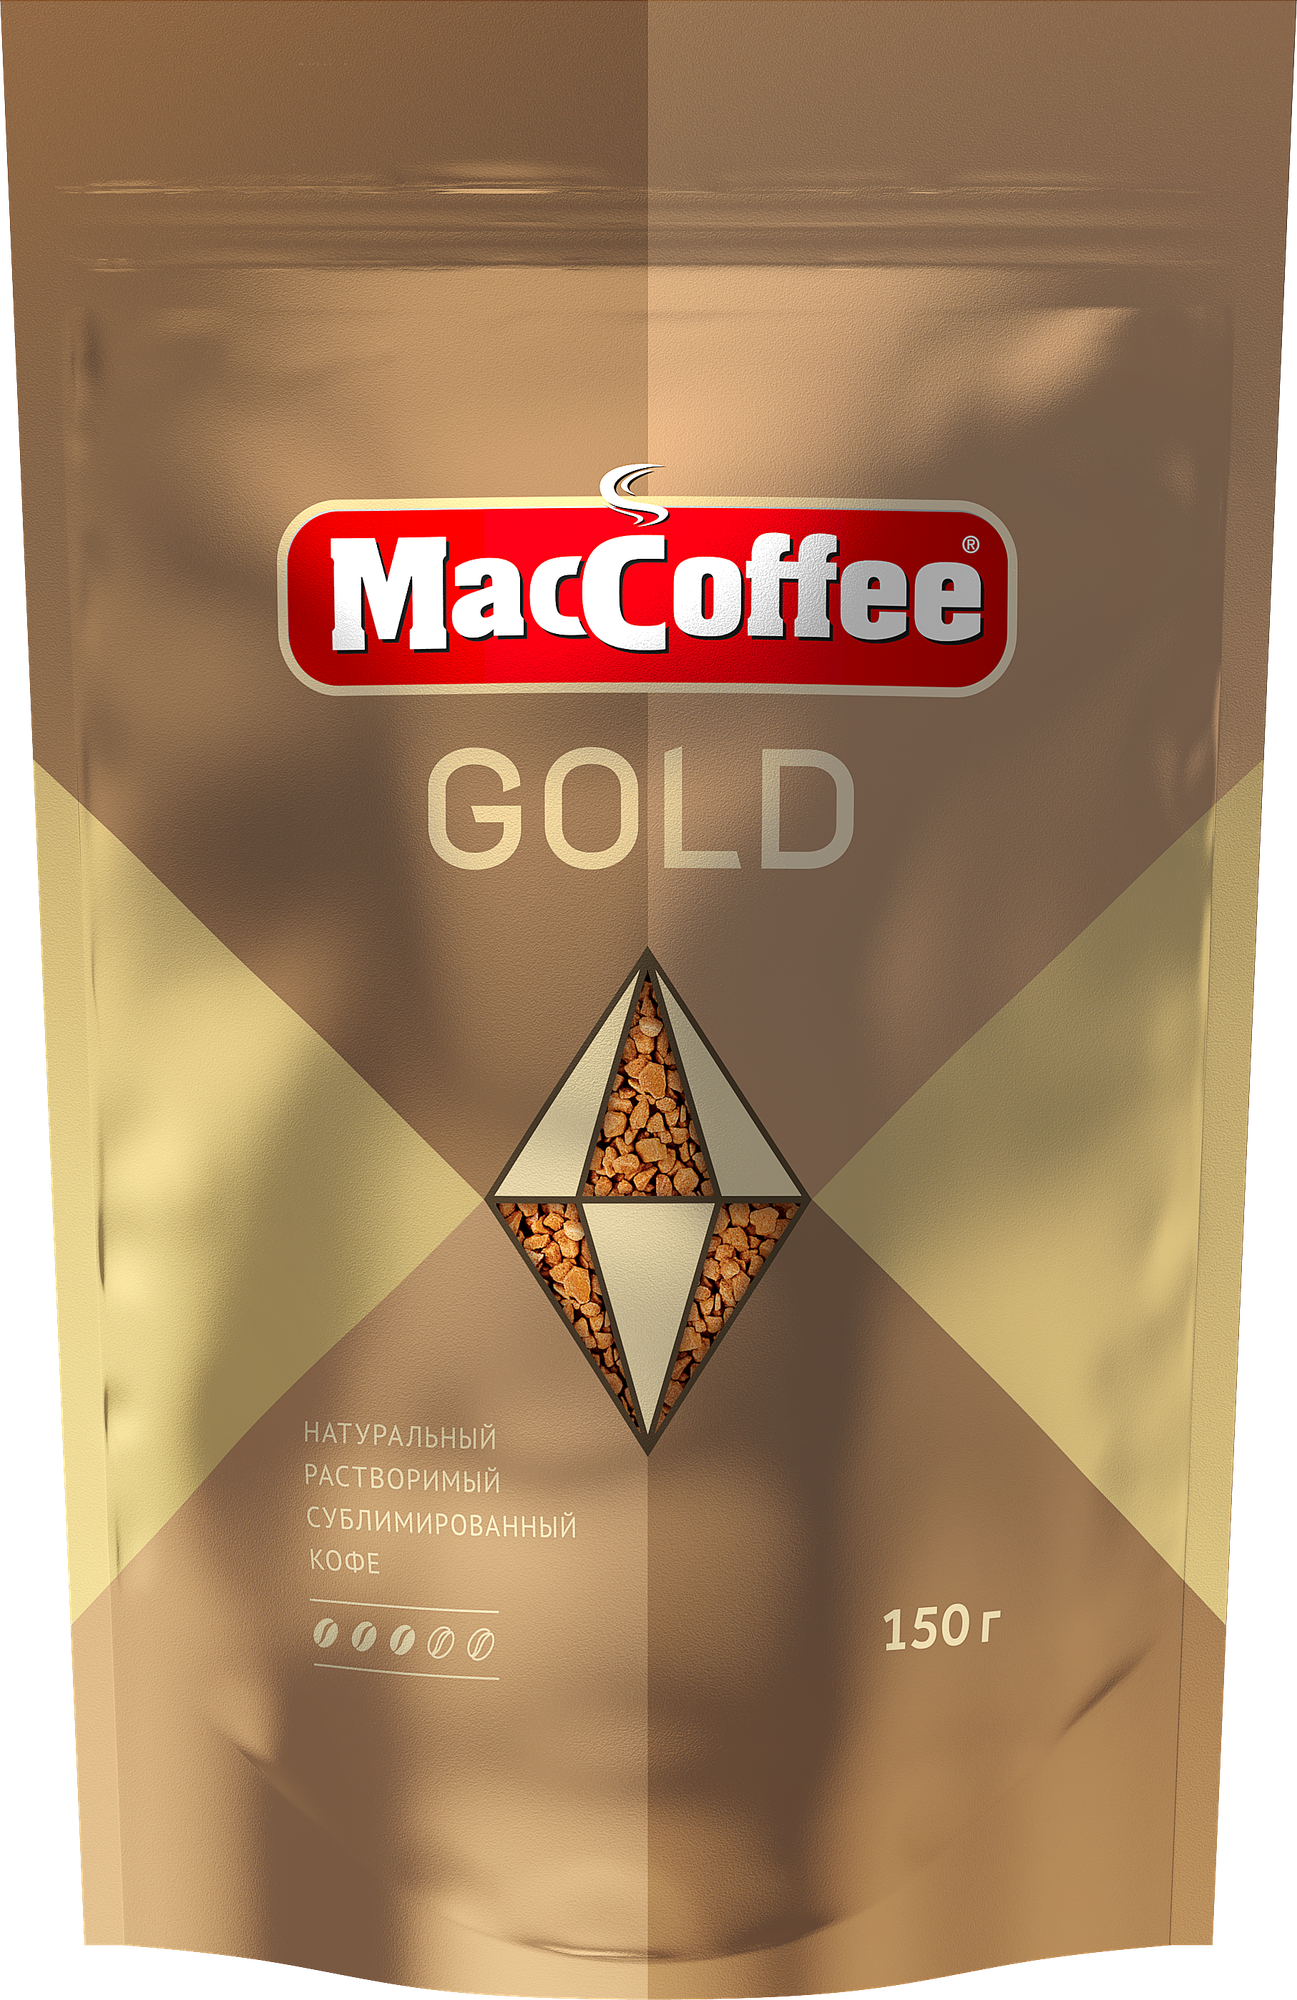 Кофе растворимый MacCoffee Gold, пакет, 150 г — купить в интернет-магазине по низкой цене на Яндекс Маркете